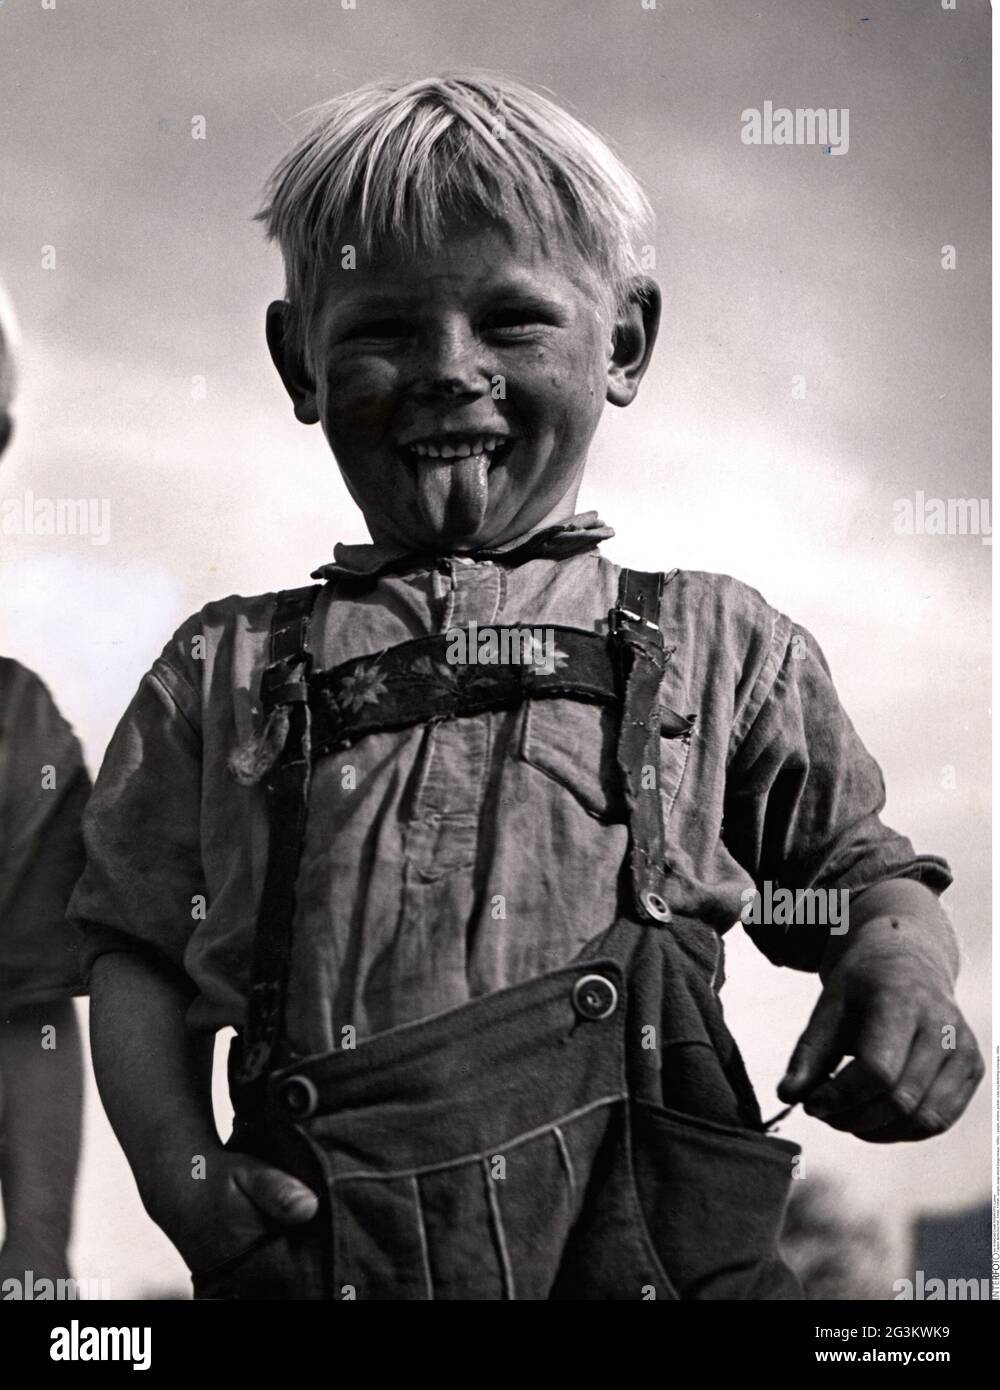 Persone, bambini, ritratto - ragazzi, ragazzo che allunga la lingua, anni '50, DIRITTI AGGIUNTIVI-CLEARANCE-INFO-NON-DISPONIBILE Foto Stock